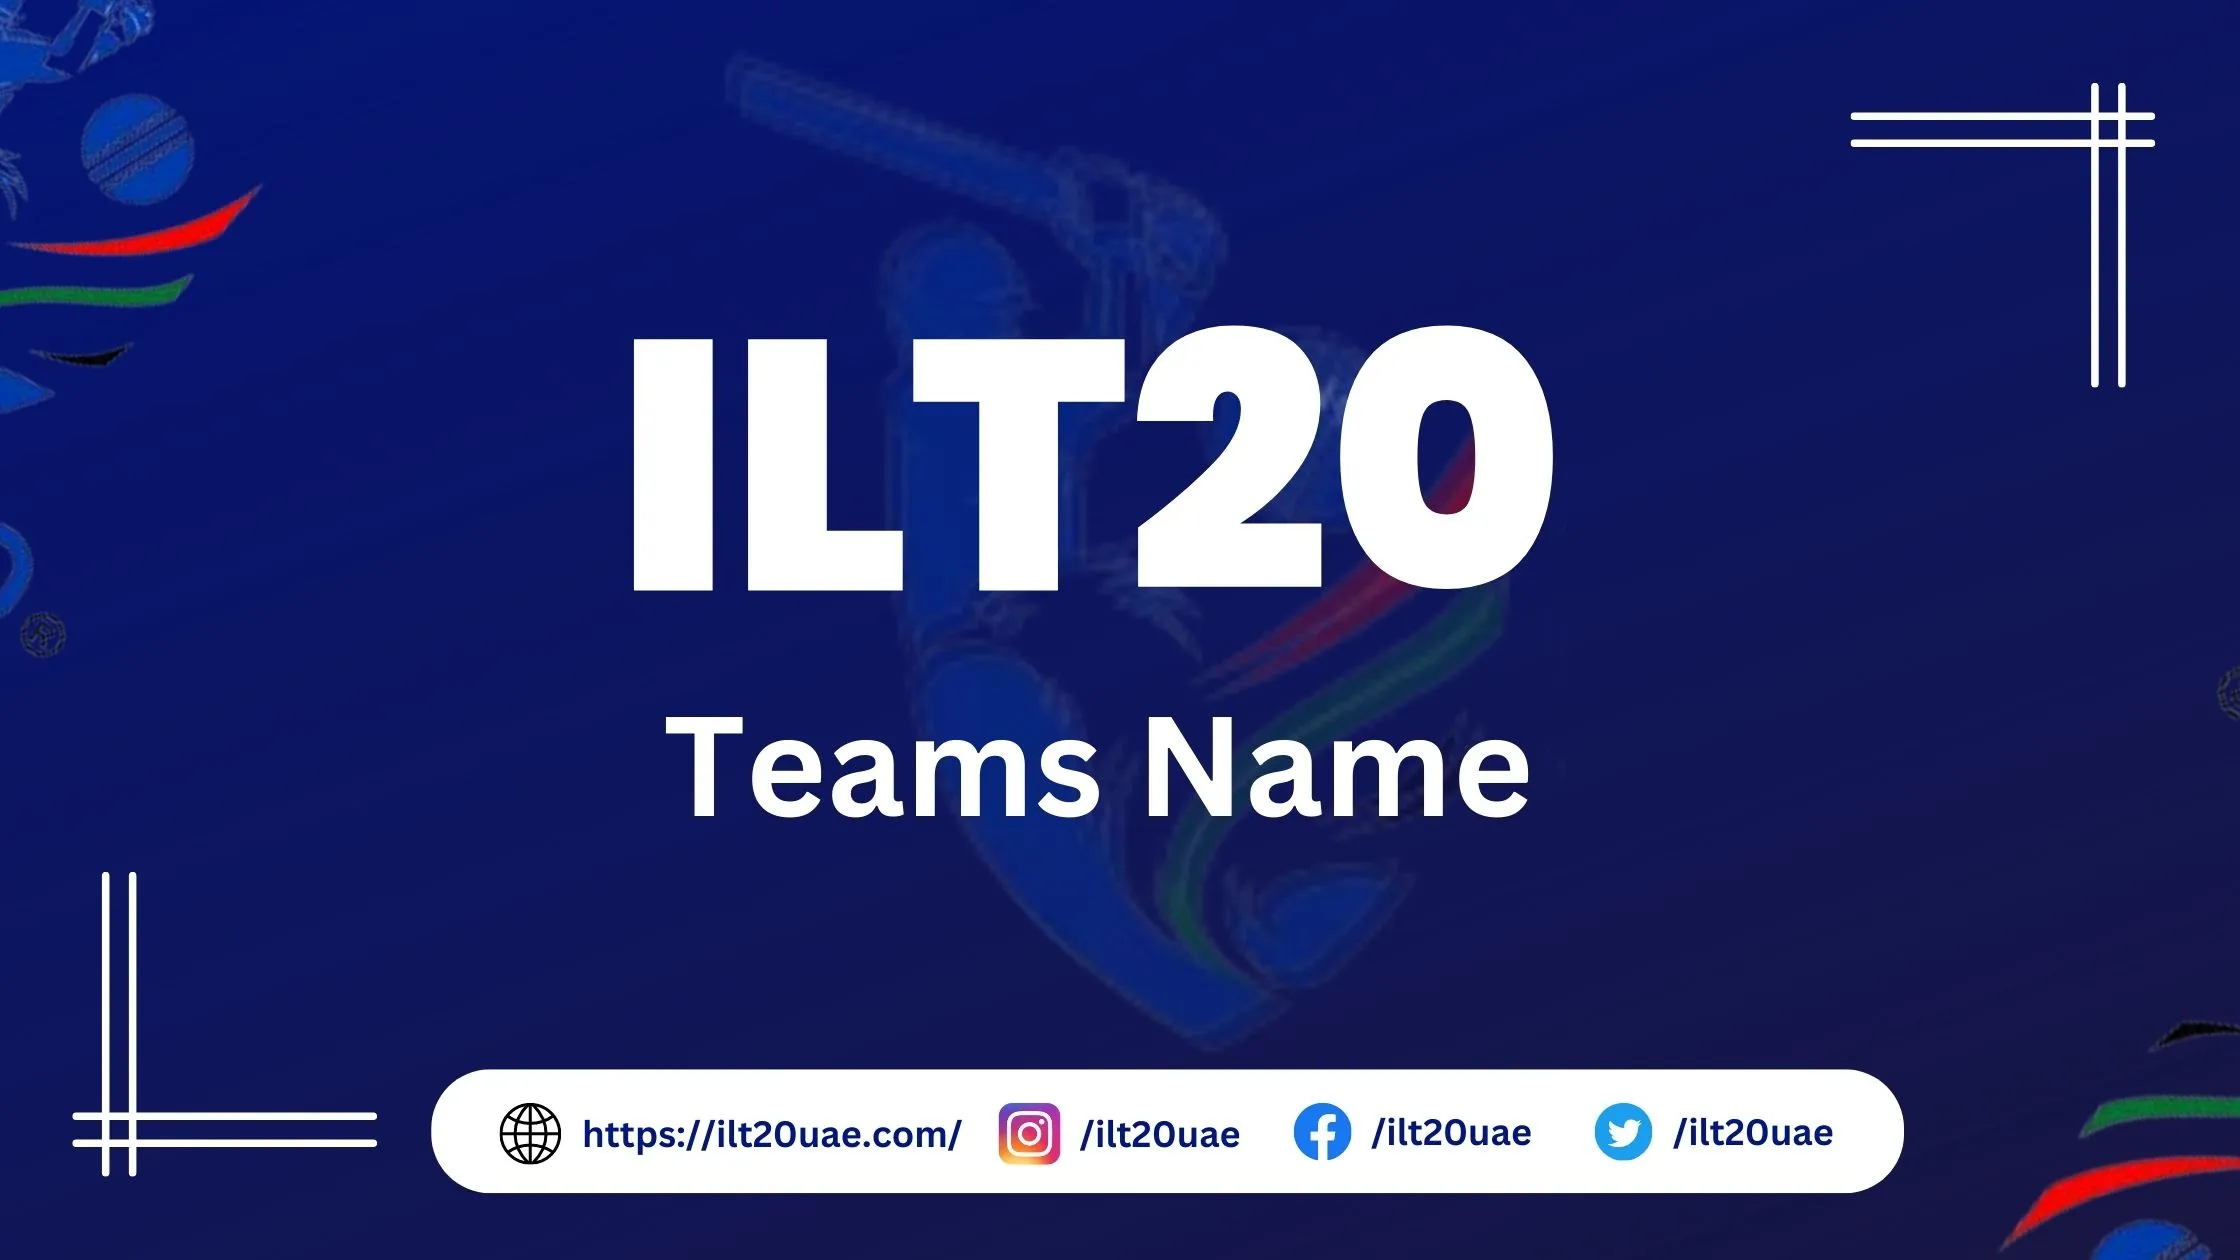 ilt20 teams name and profile